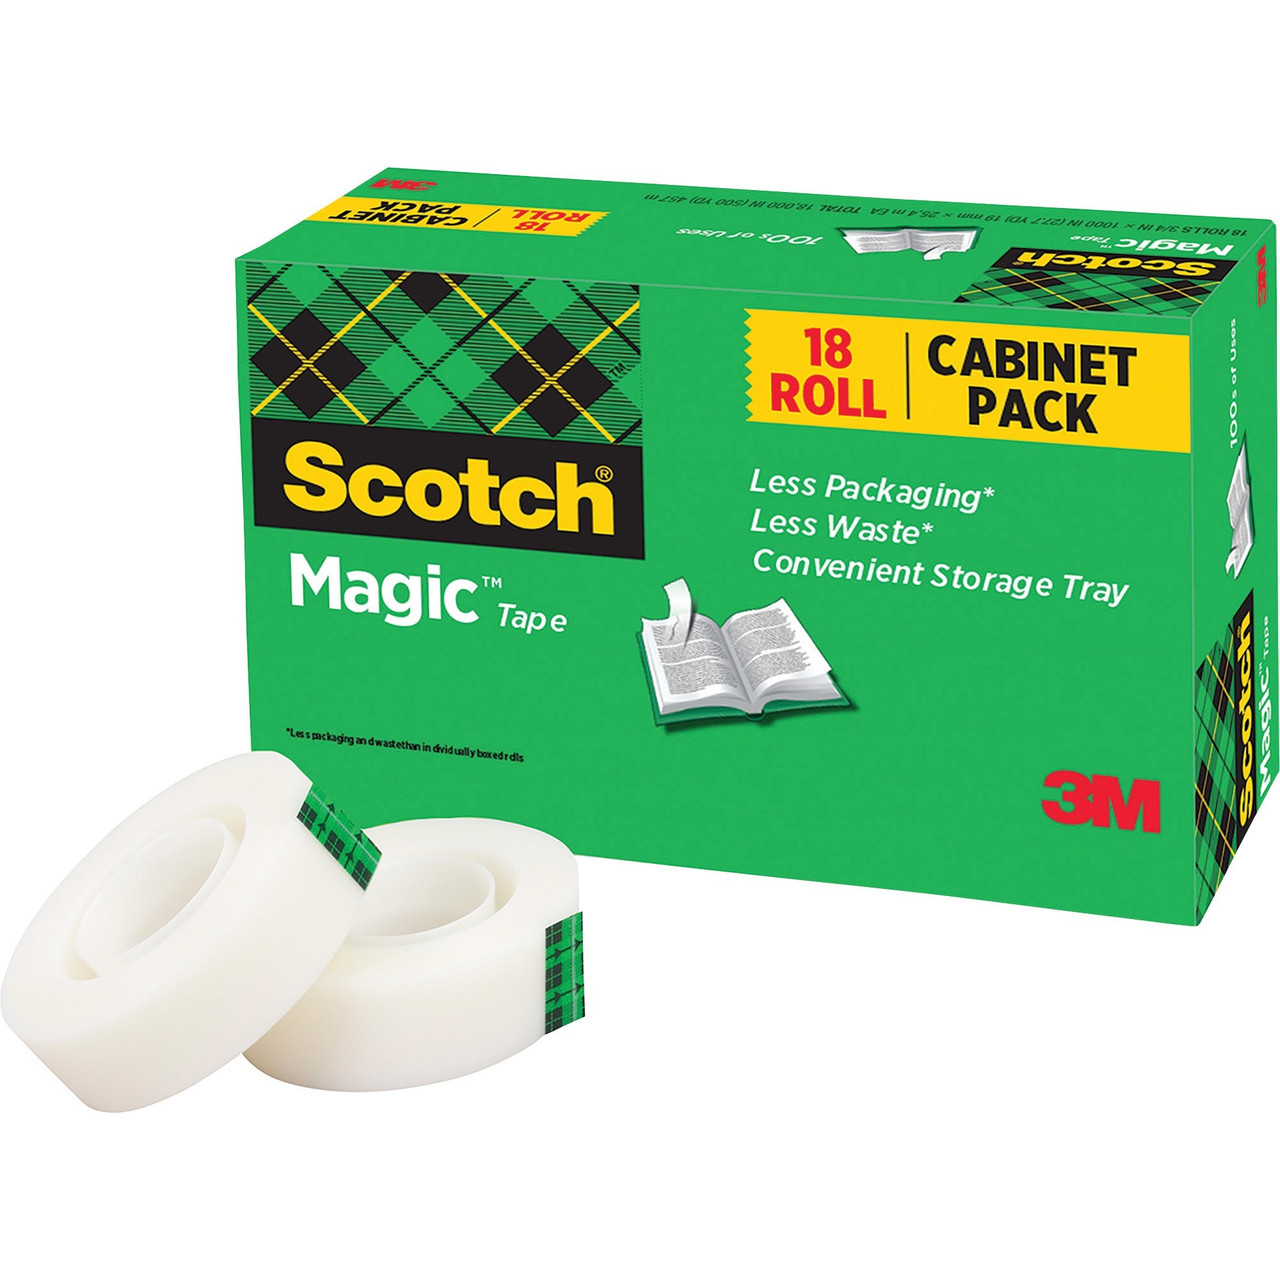 Scotch 3/4W Magic Tape